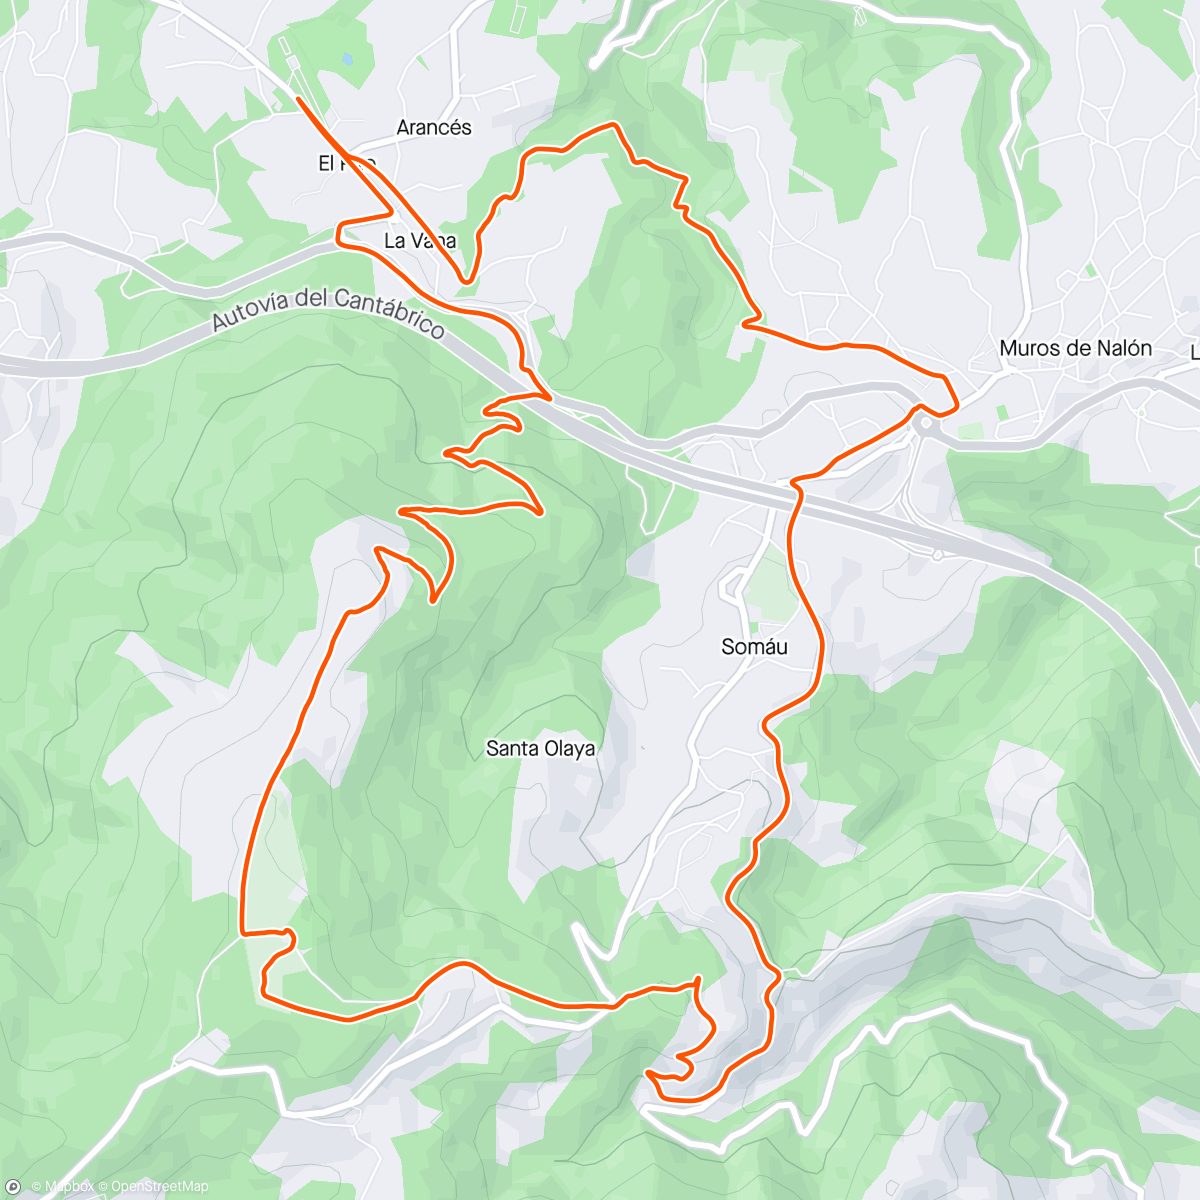 アクティビティ「Evening Mountain Bike Ride」の地図